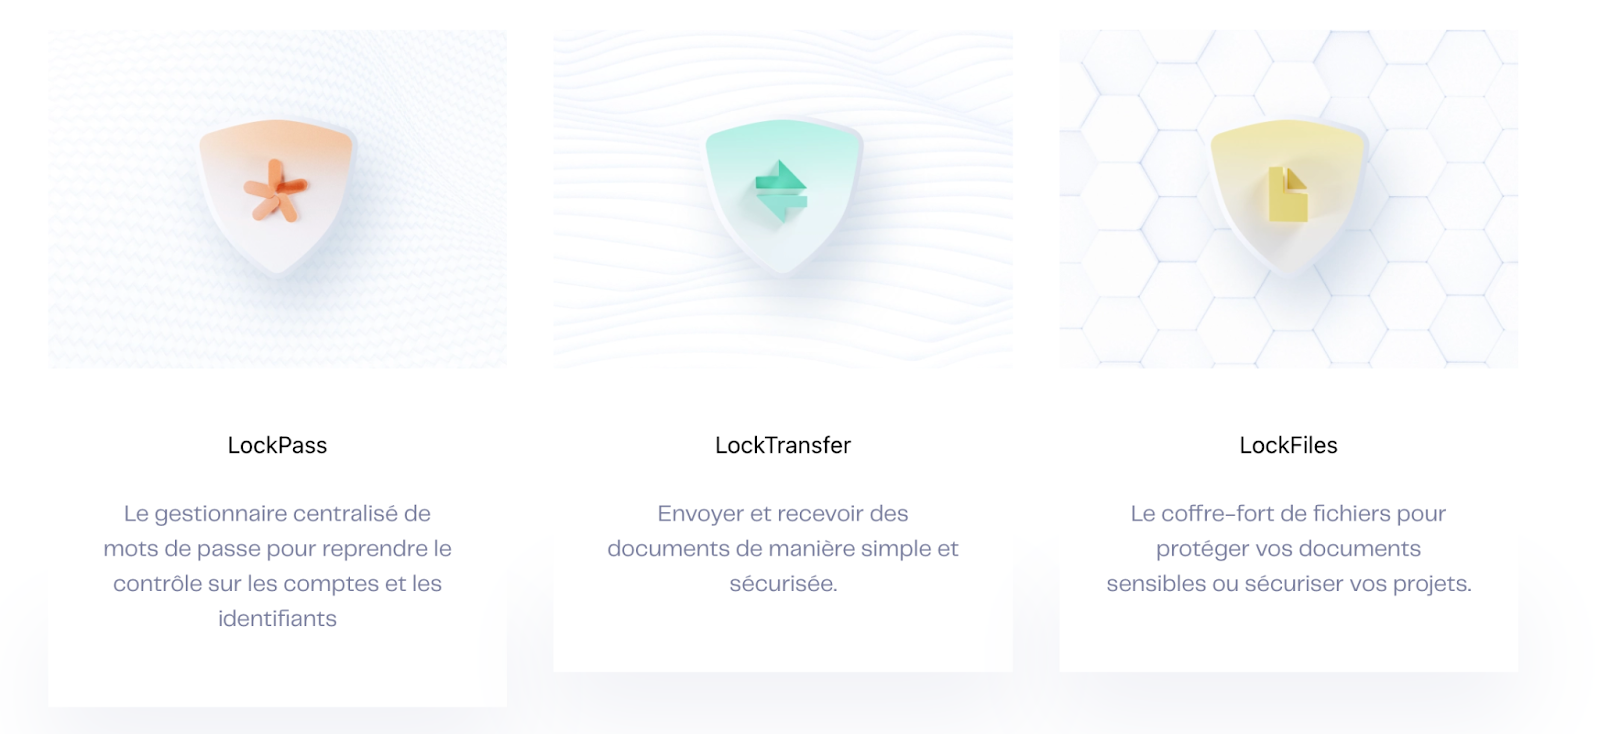 Aperçu des 3 solutions proposées par LockSelf pour sécuriser les accès et documents de l'ensemble des collaborateurs.